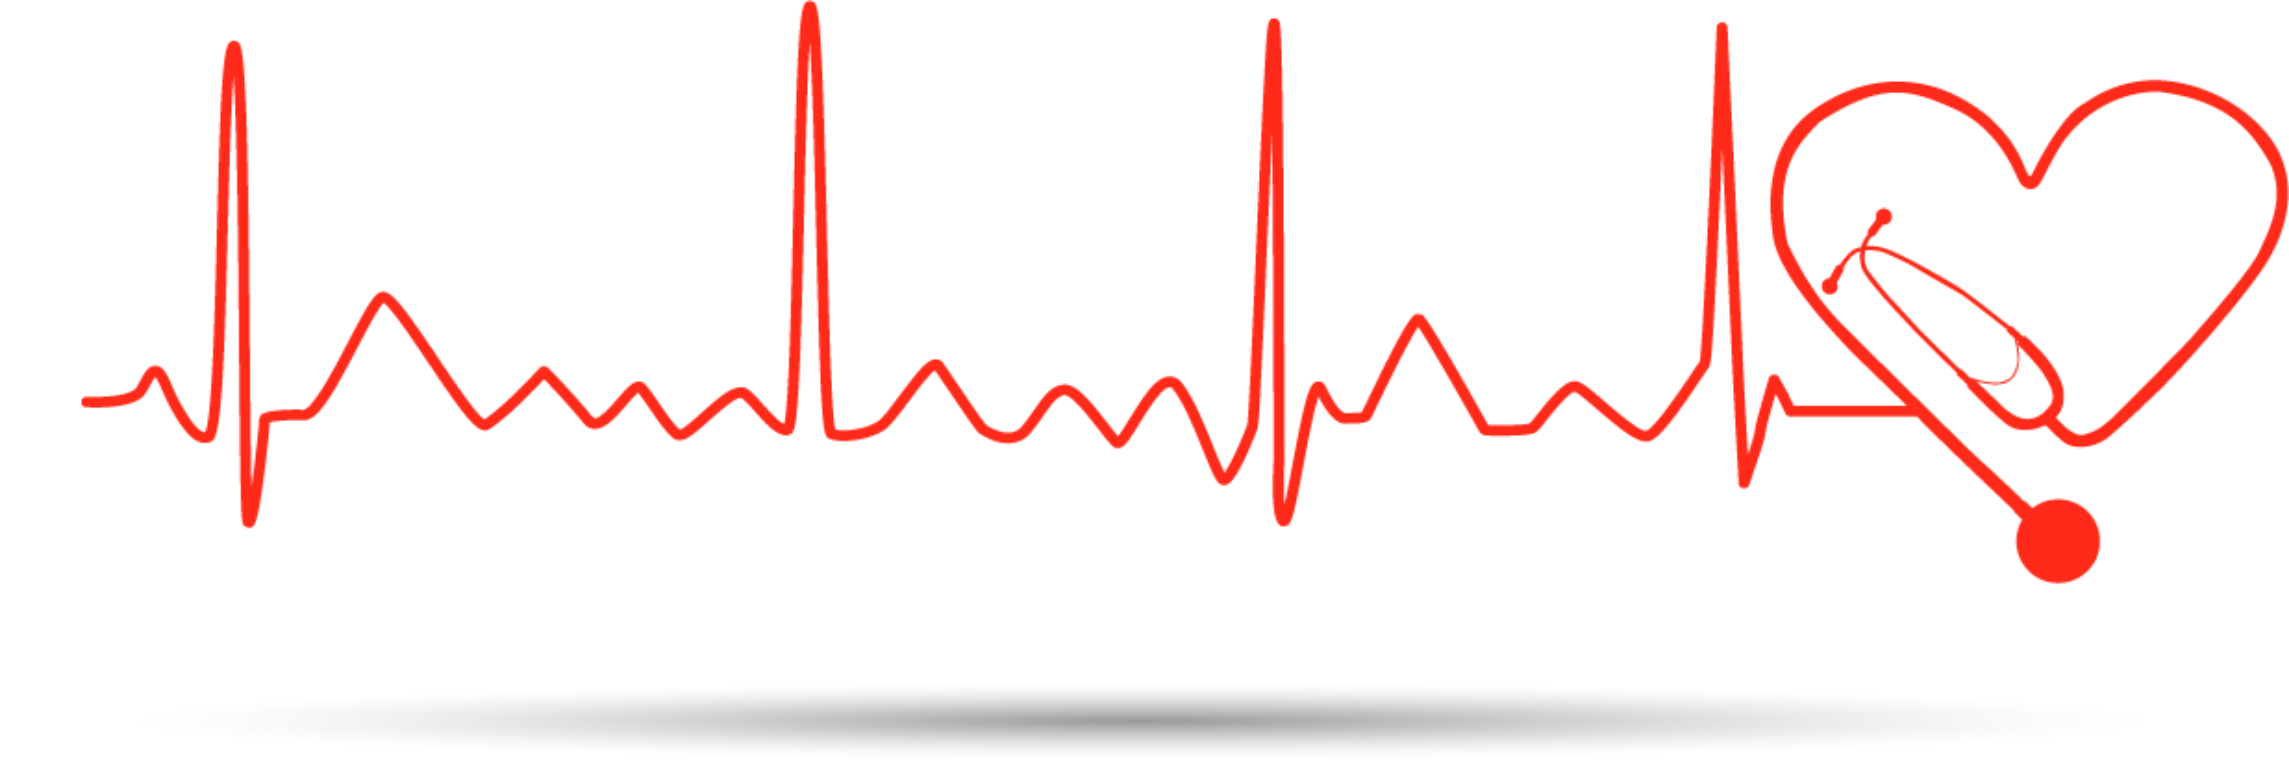 Сердцебиения 23. Пульс рисунок. Кардиограмма сердца. Пульс без фона. Линия пульса.